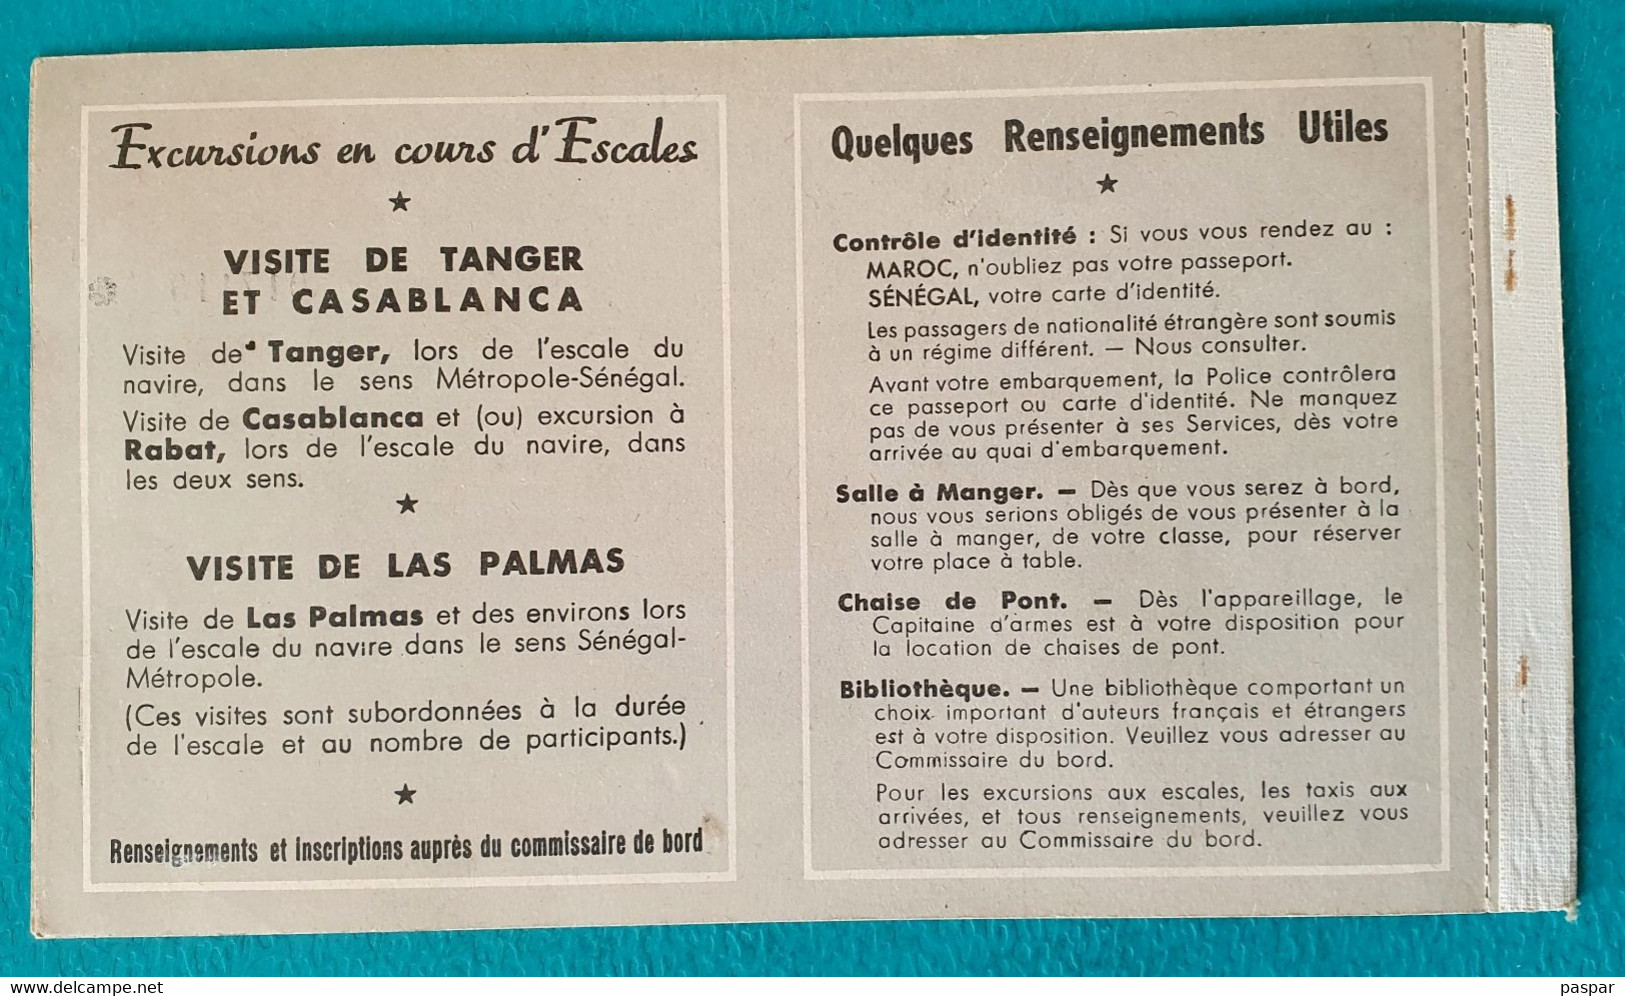 COMPAGNIE DE NAVIGATION PAQUET - BILLET DE PASSAGE ALLER SIMPLE DAKAR MARSEILLE 1ere CLASSE SENEGAL - 1956 - Mundo